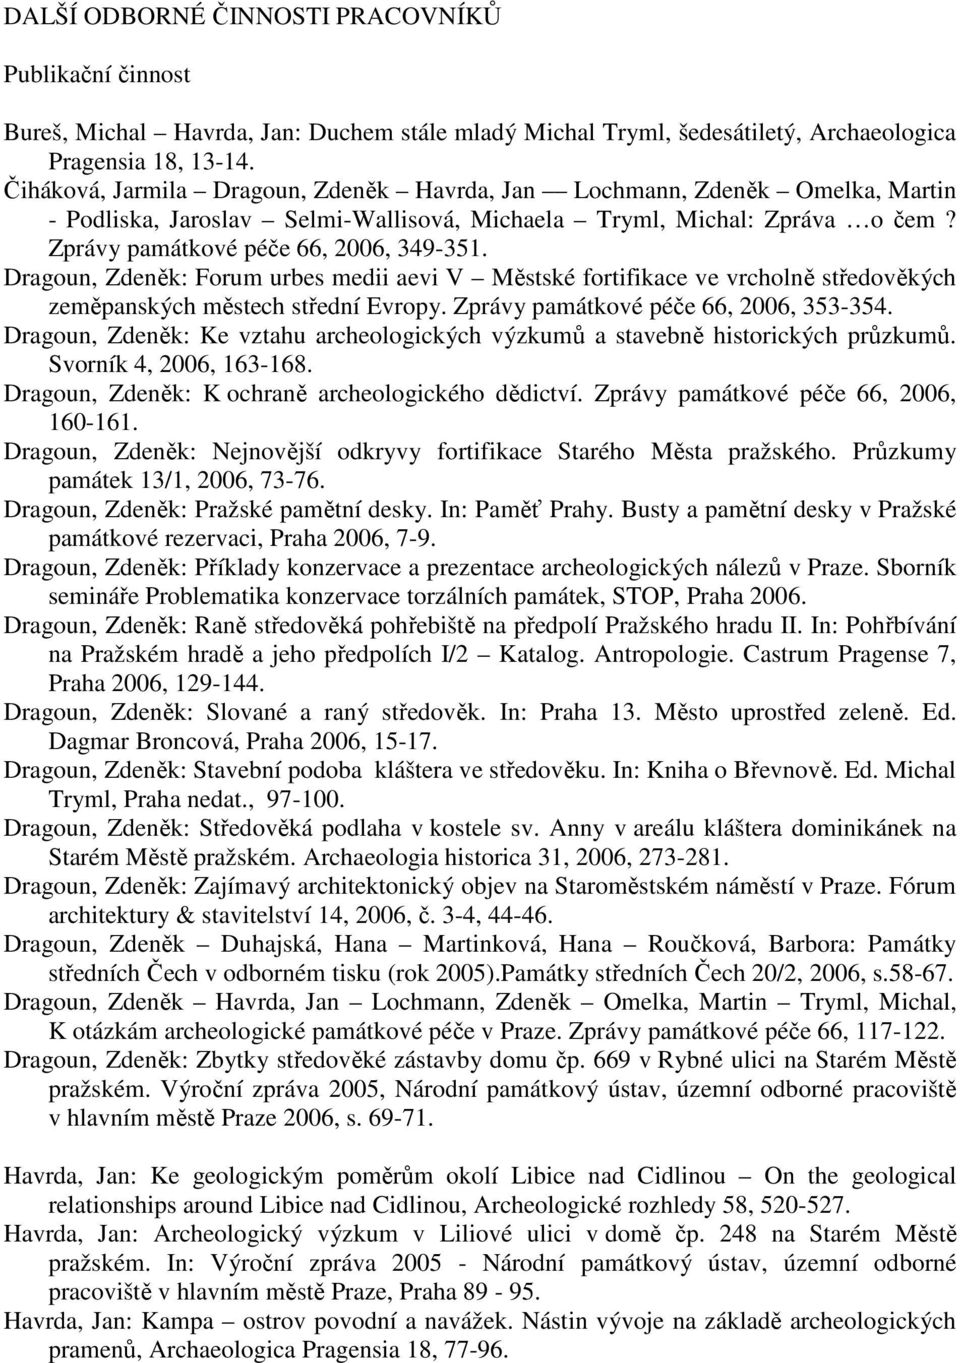 Dragoun, Zdeněk: Forum urbes medii aevi V Městské fortifikace ve vrcholně středověkých zeměpanských městech střední Evropy. Zprávy památkové péče 66, 2006, 353-354.